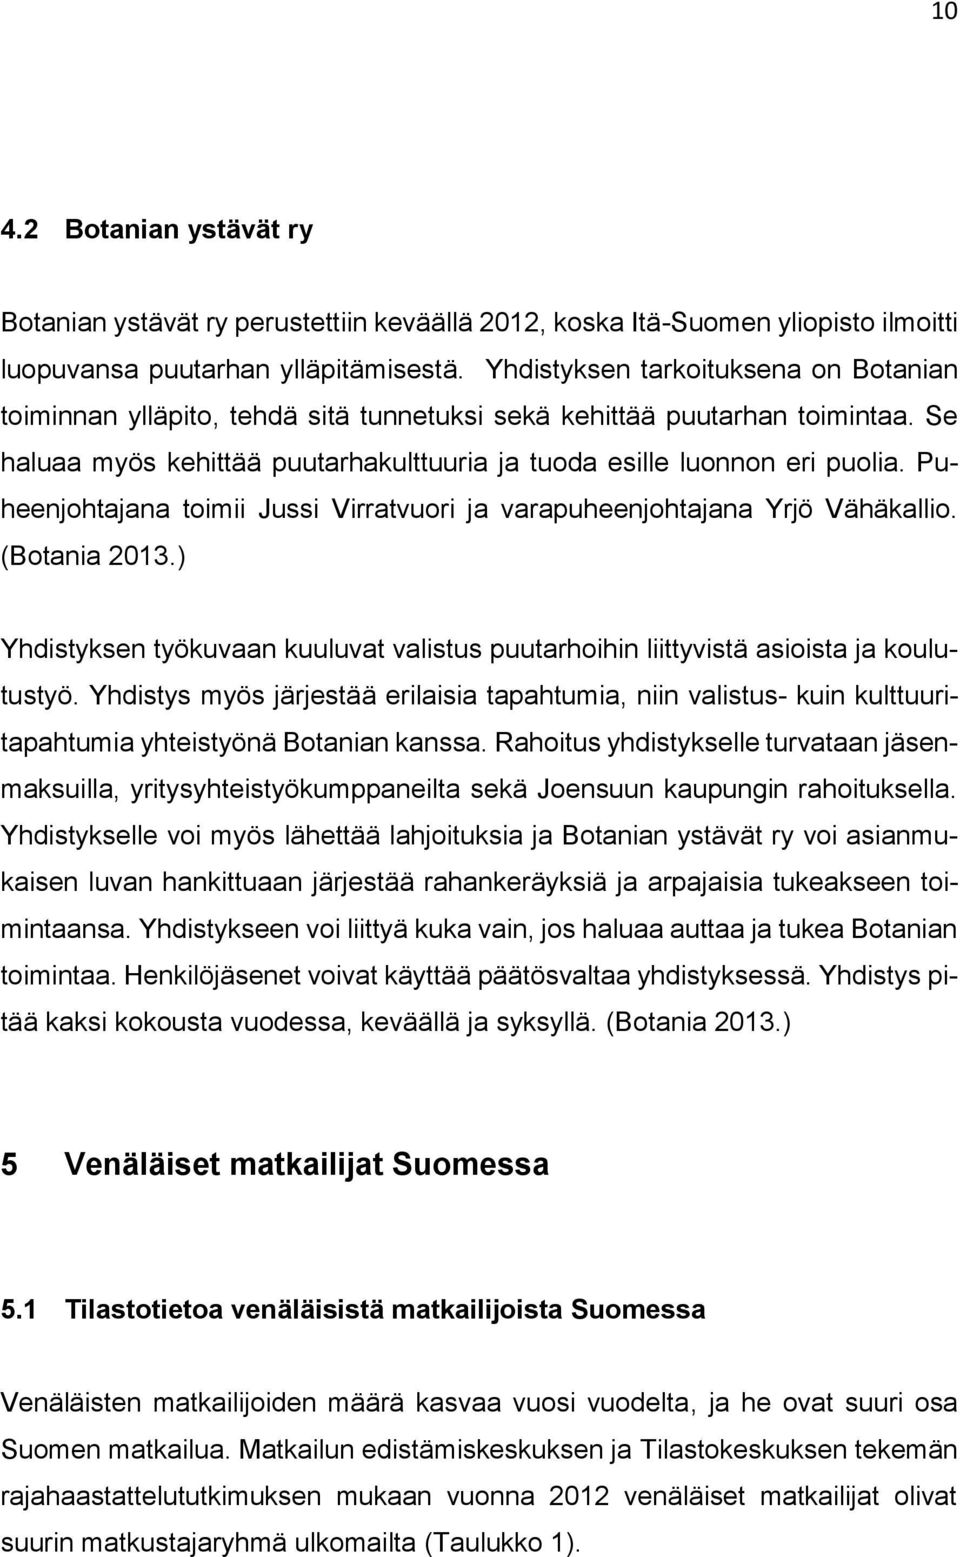 Puheenjohtajana toimii Jussi Virratvuori ja varapuheenjohtajana Yrjö Vähäkallio. (Botania 2013.) Yhdistyksen työkuvaan kuuluvat valistus puutarhoihin liittyvistä asioista ja koulutustyö.